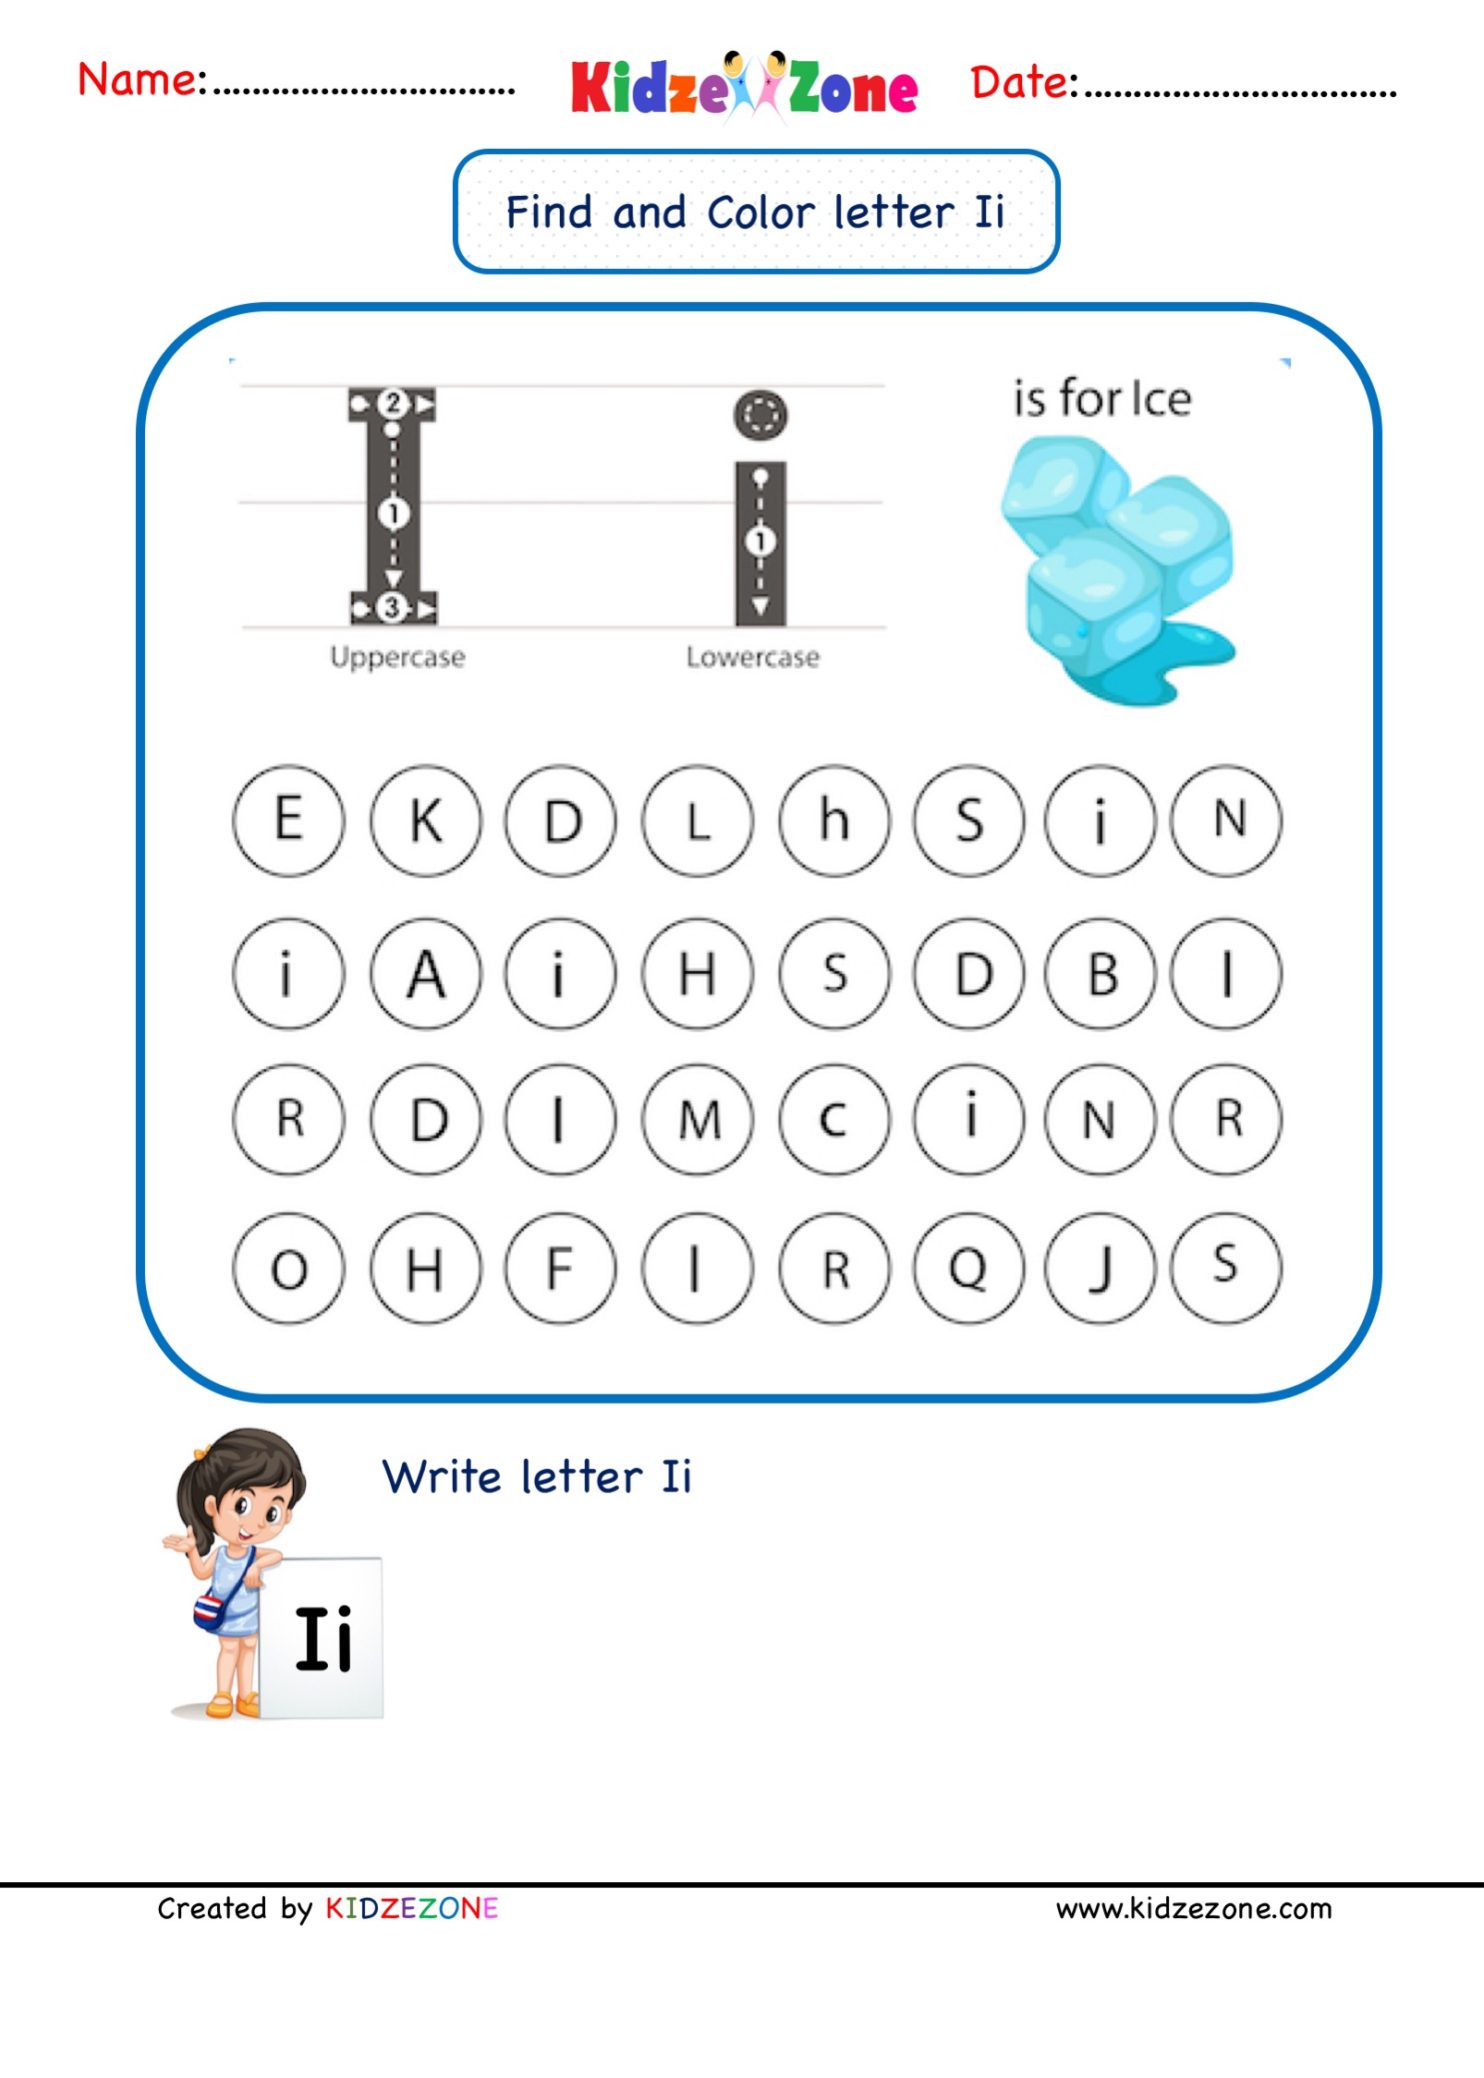 kindergarten-letter-i-worksheets-find-and-color